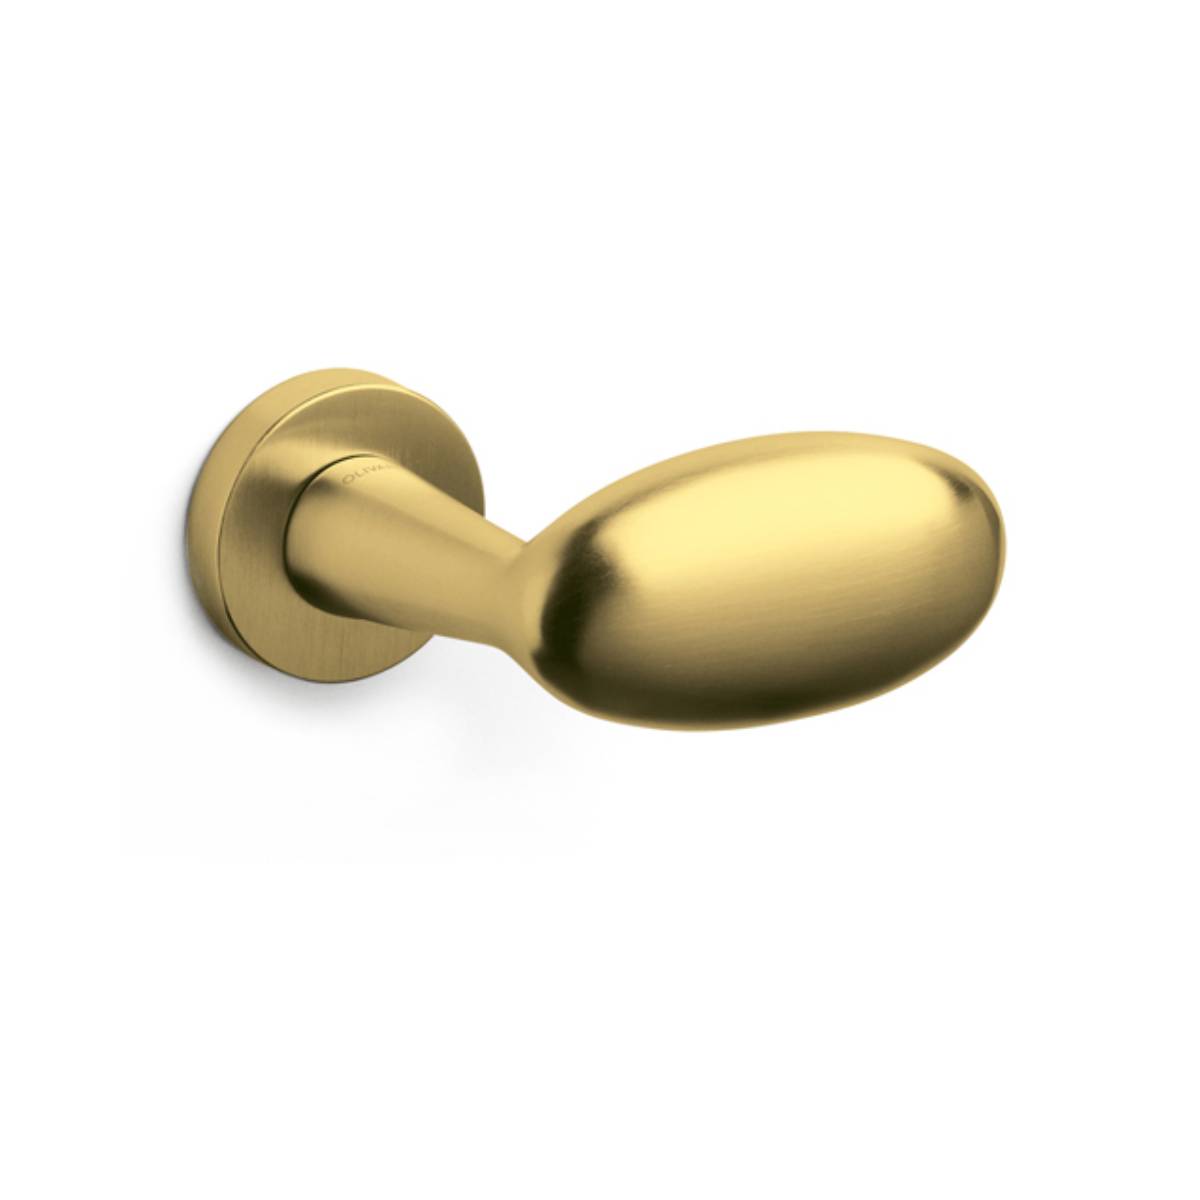 Pair of Blindo Matte Gold door handles